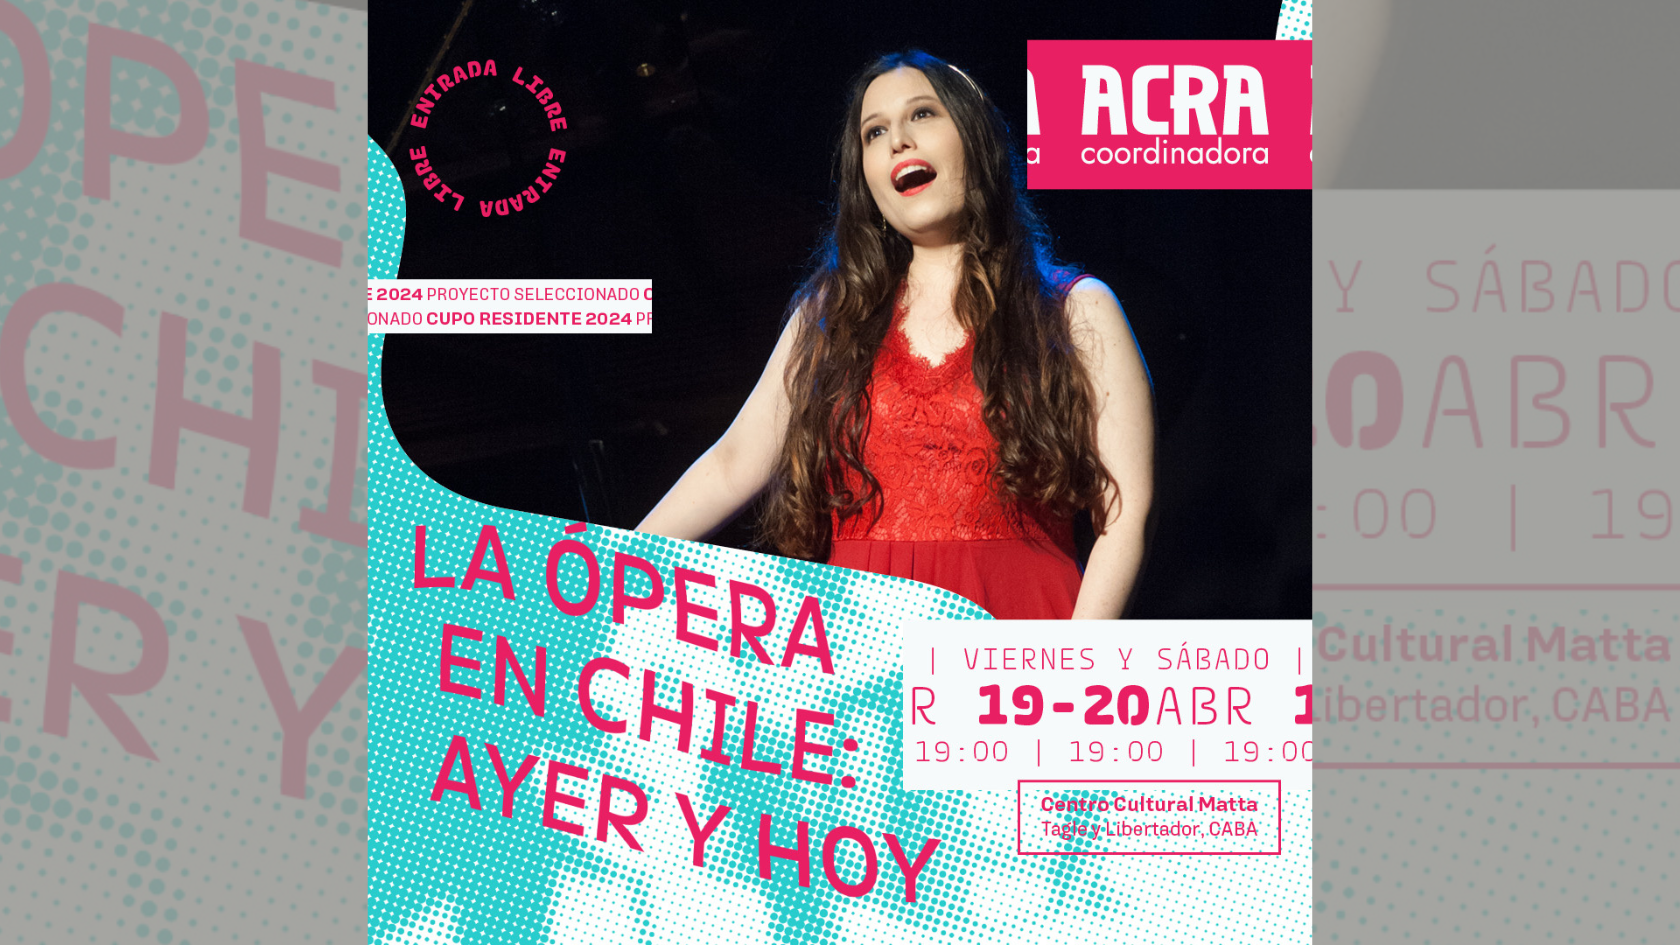 Una oportunidad imperdible de acercarse a la ópera chilena